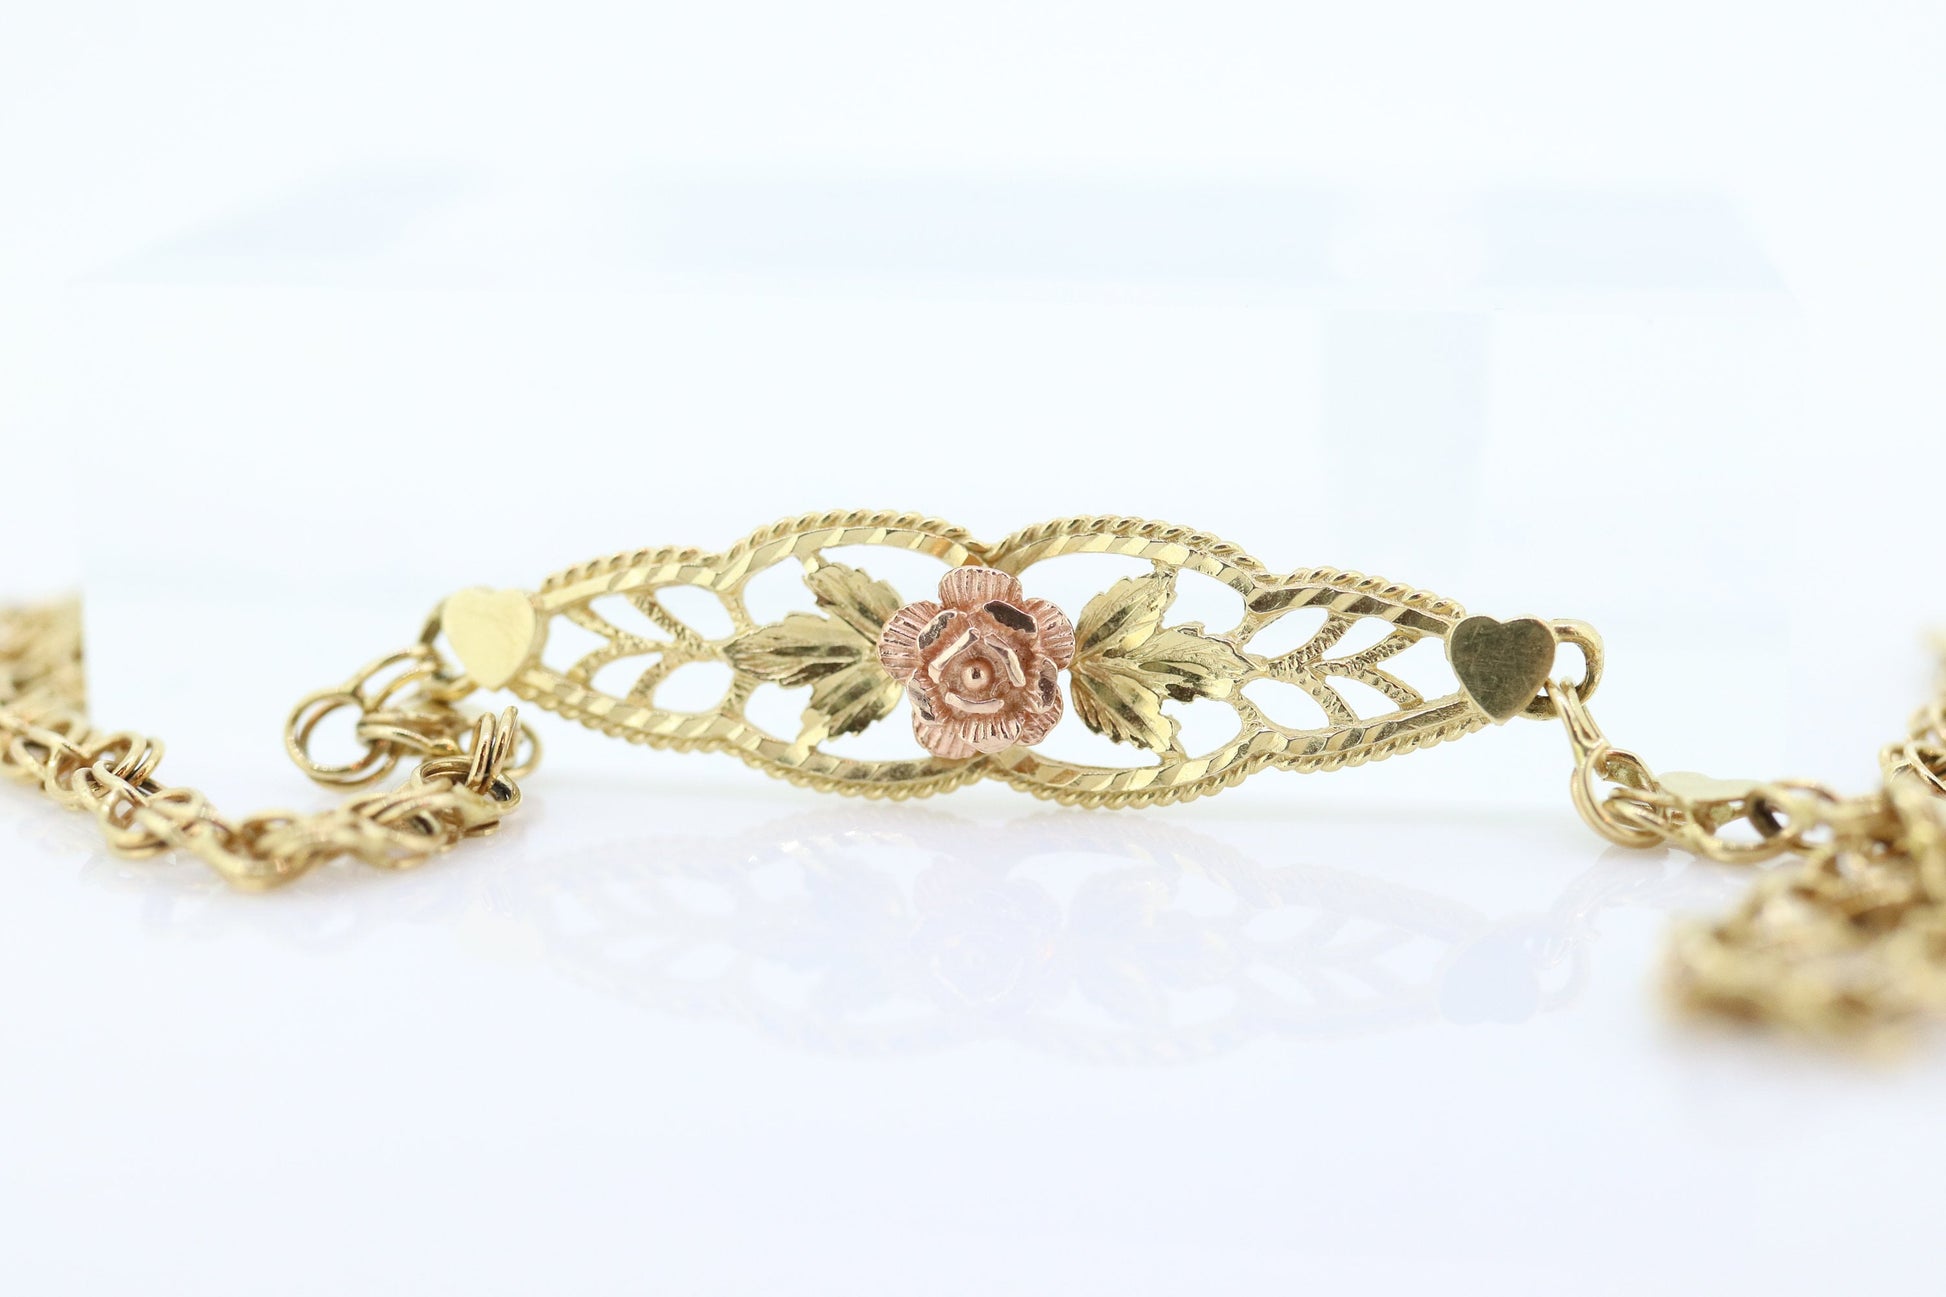 14k Flower Rose Filigree Shield Bracelet. 14k Yellow Rose gold Heart link chain filigree open shield Bracelet. st(113)